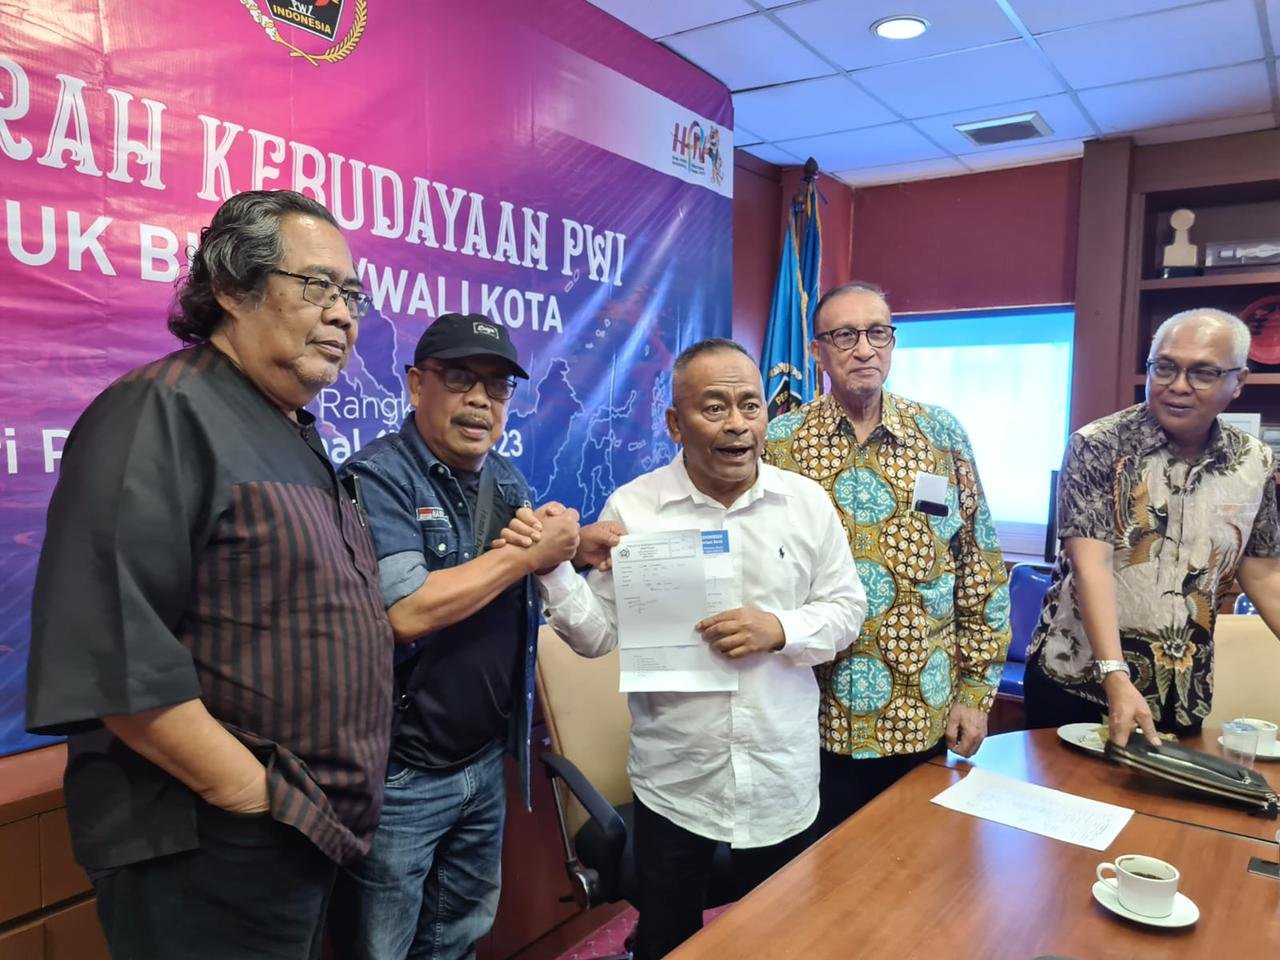 Ketua PWI Aceh, Nasir Nurdin menyerahkan dokumen pendaftaran sebagai calon tuan rumah Porwanas 2025 kepada Ketua Umum PWI Pusat, Atal S. Depari di Kantor PWI Pusat, Lantai IV Gedung Dewan Pers, Jakarta Pusat